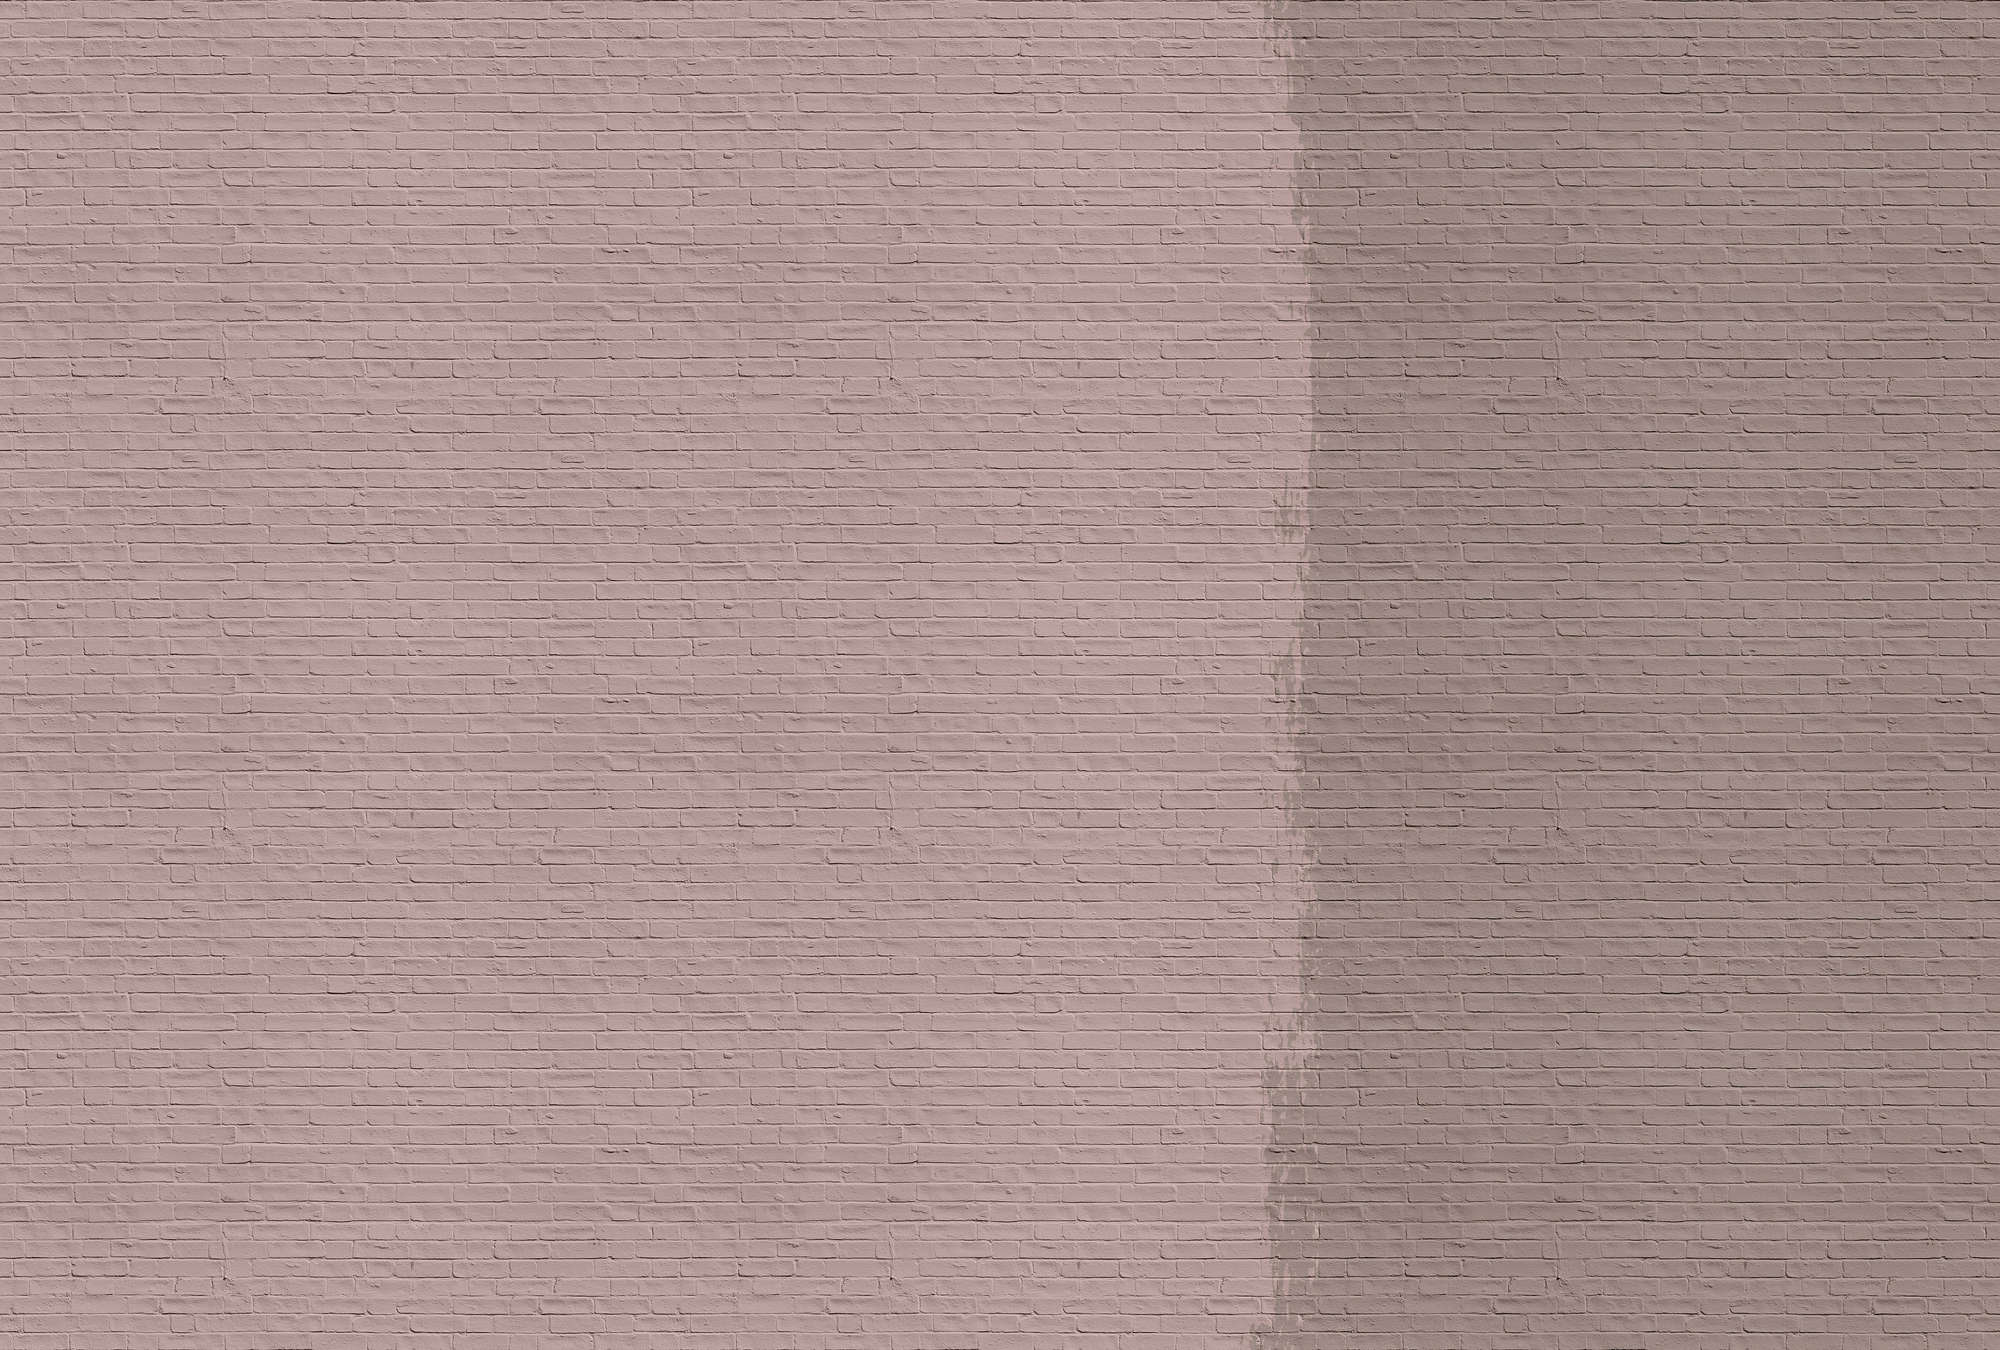             Tainted love 2 - Fototapete mit gestrichener Ziegelwand – Rosa, Taupe | Struktur Vlies
        